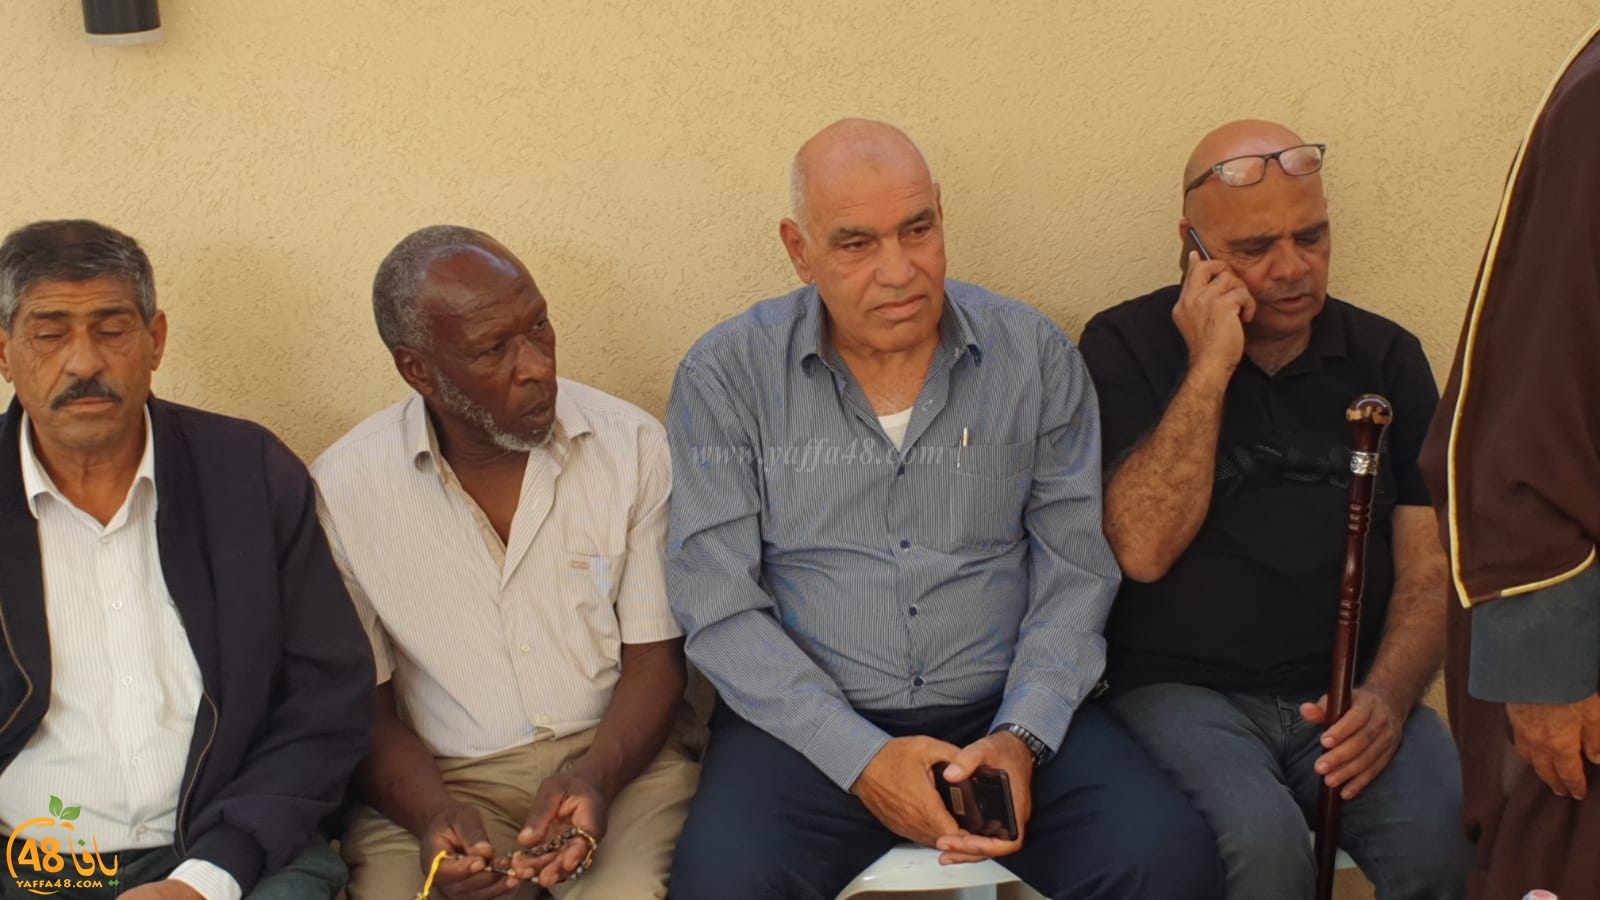 فيديو: عقد راية الصلح بين عائلتي الدغامين وابو قطيفان من مدينة اللد 